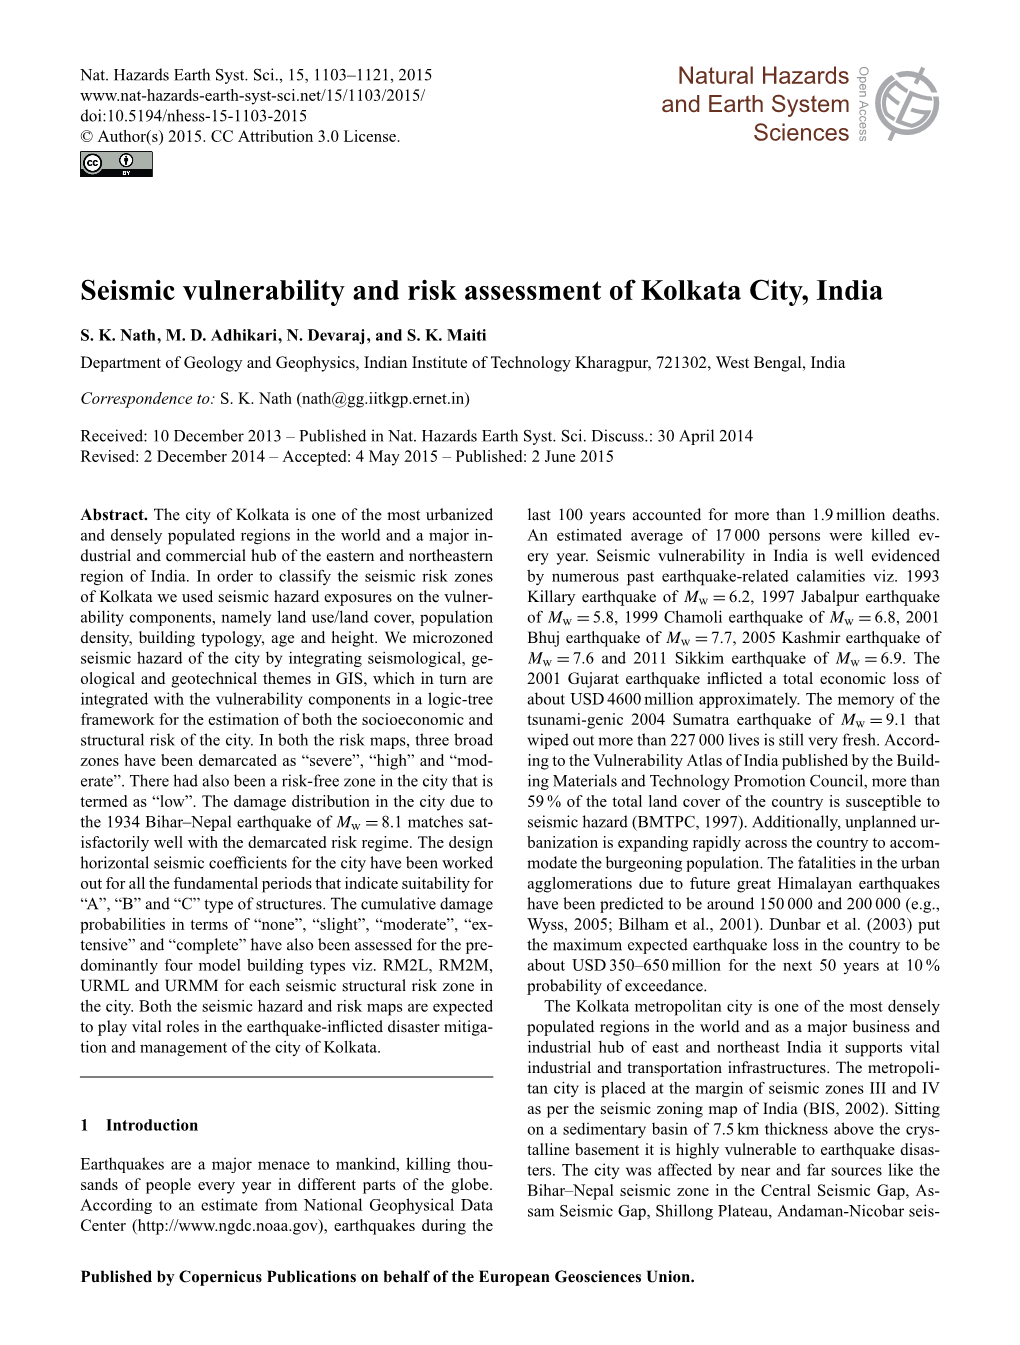 Seismic Vulnerability and Risk Assessment of Kolkata City, India